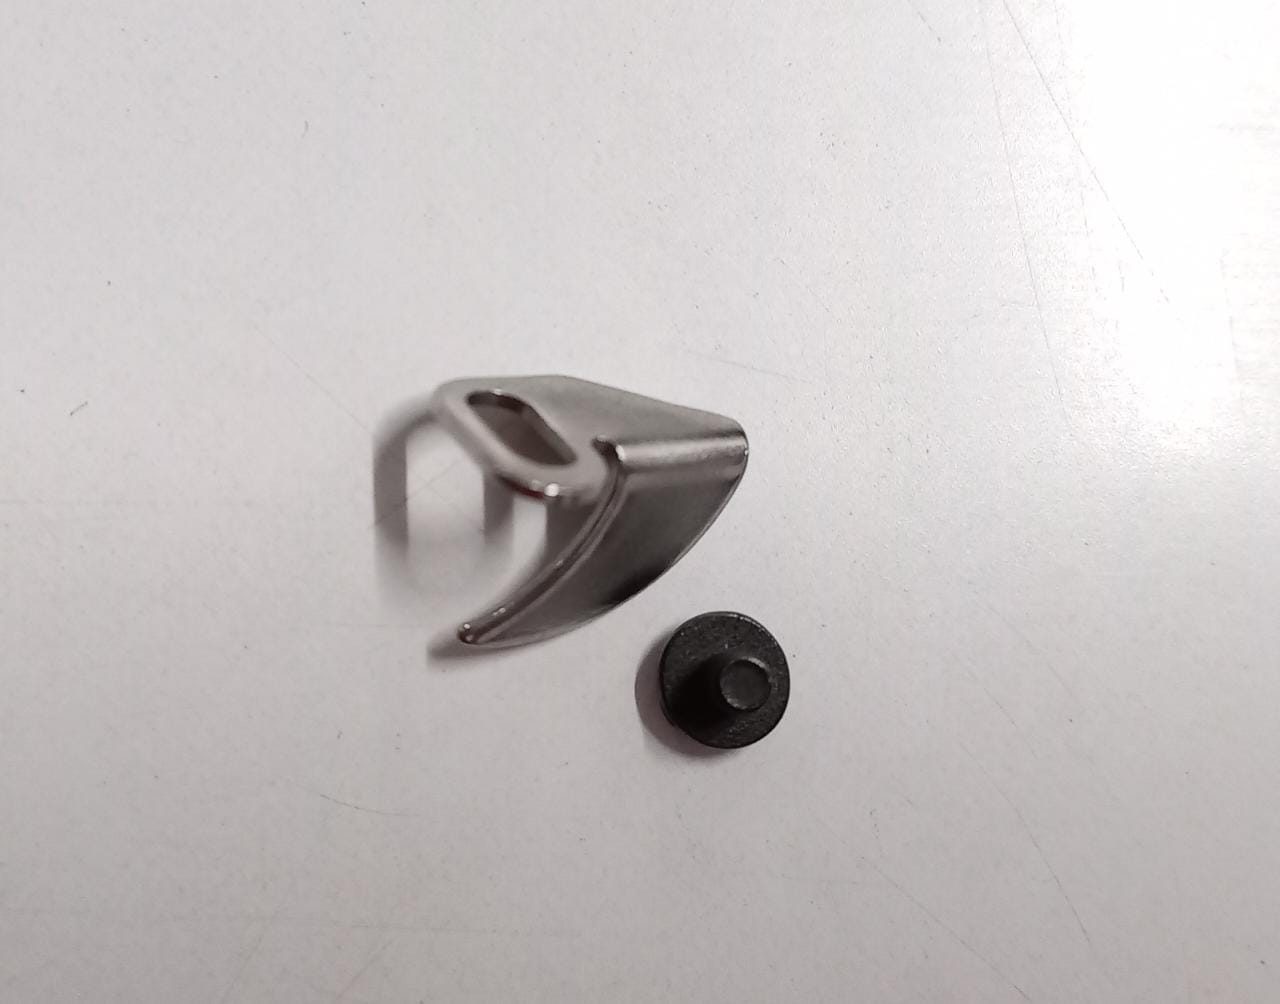 Guía central pequeña (CHOTA TOTA) con tornillo para prensatelas PEGASUS W500 (Flatlock/Interlock), pieza de repuesto para máquina de coser